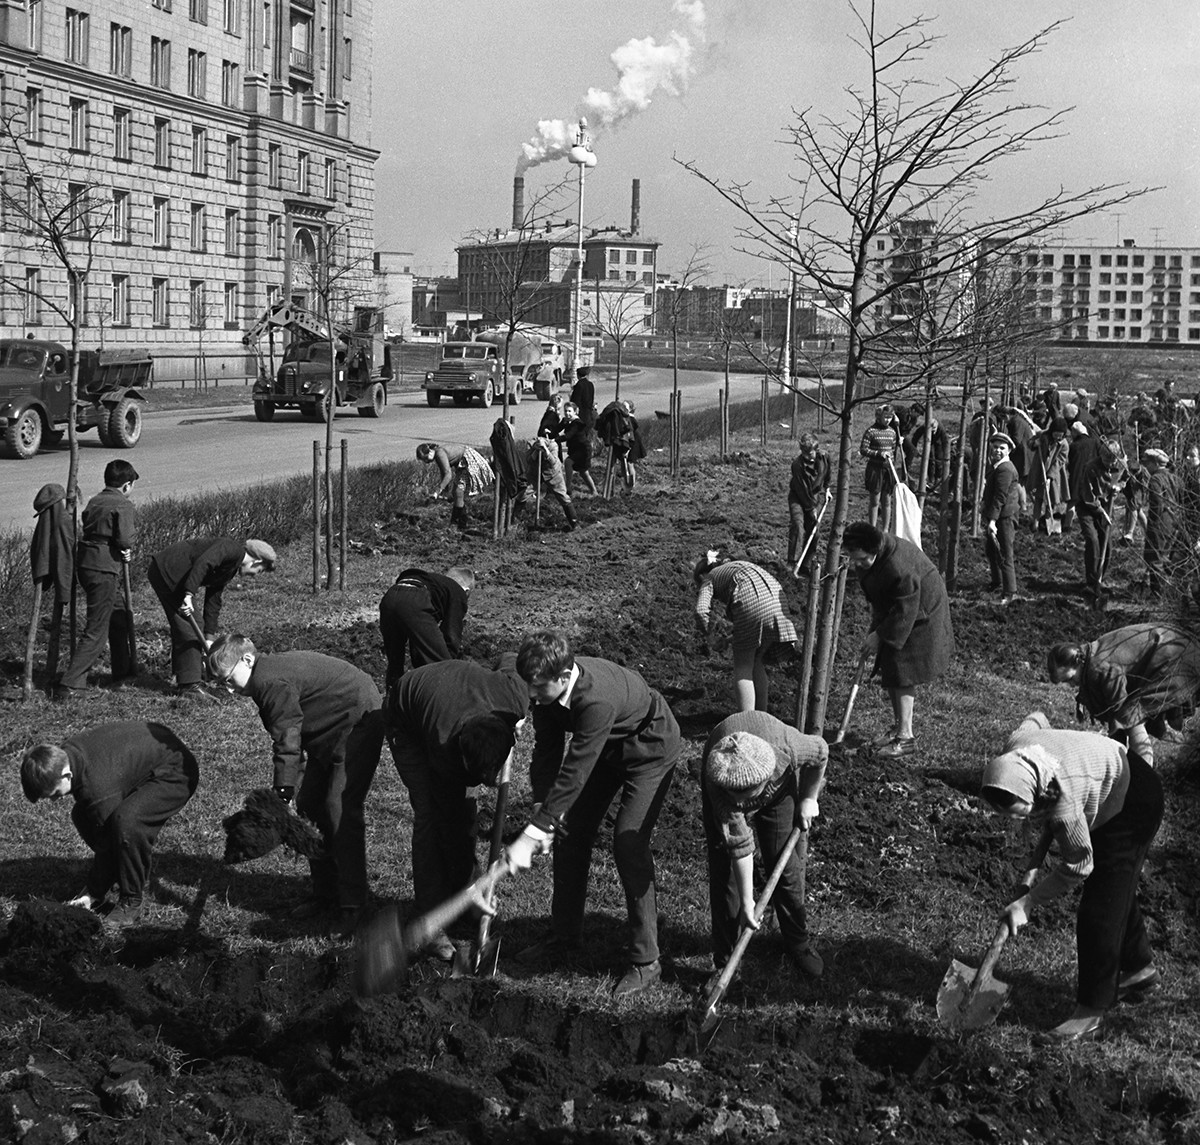 Soubbotnik à Moscou : des écoliers et professeurs plantent des arbres dans un square. 1964

